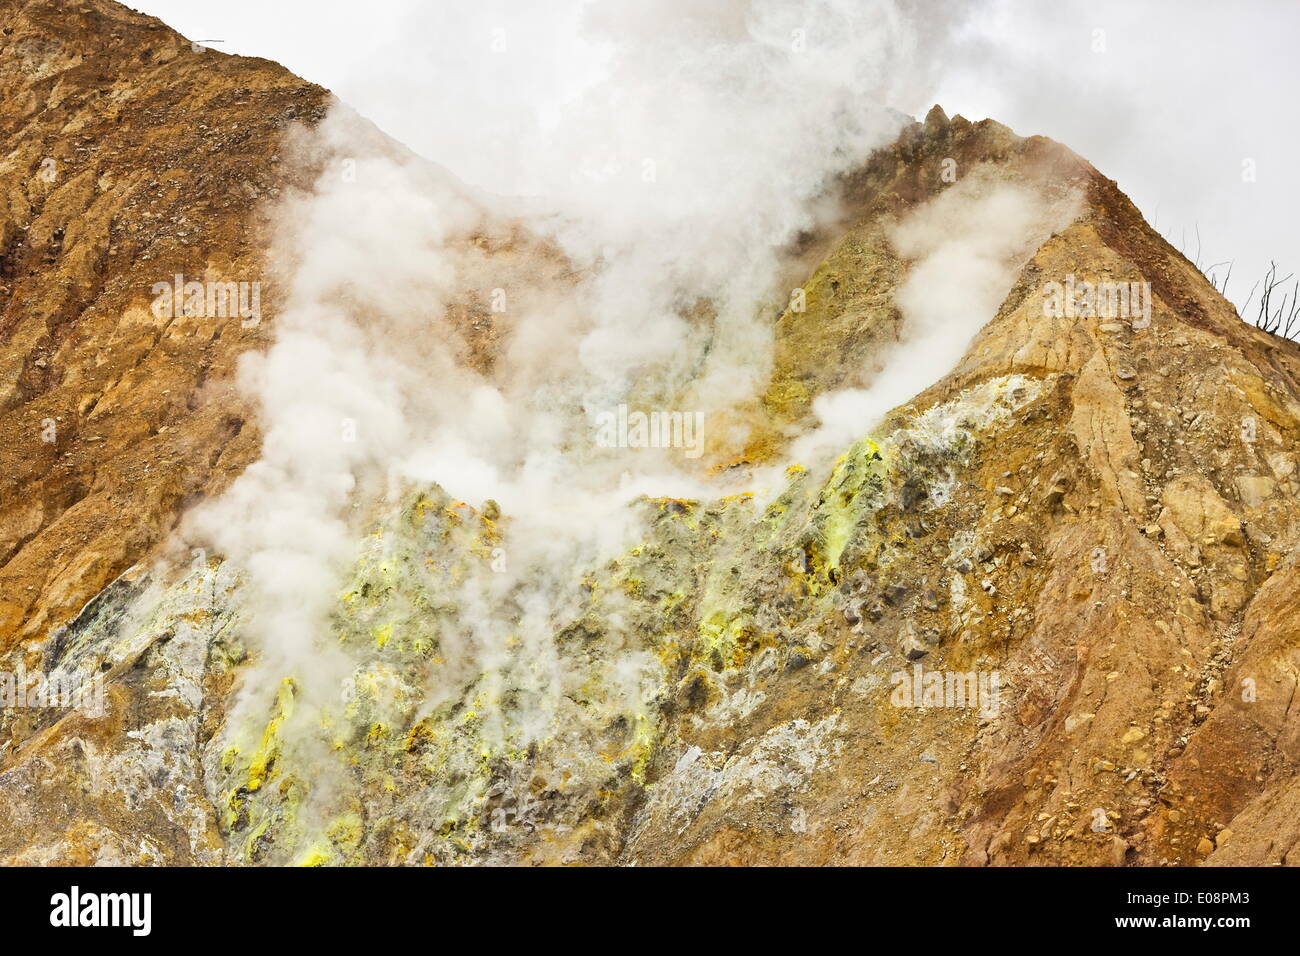 Incrusté de soufre fumerolles au volcan Papandayan, un cratère caldeira, quatre actifs, à l'ouest de Garut Java, Java, Indonésie, Asie du Sud, Asie Banque D'Images